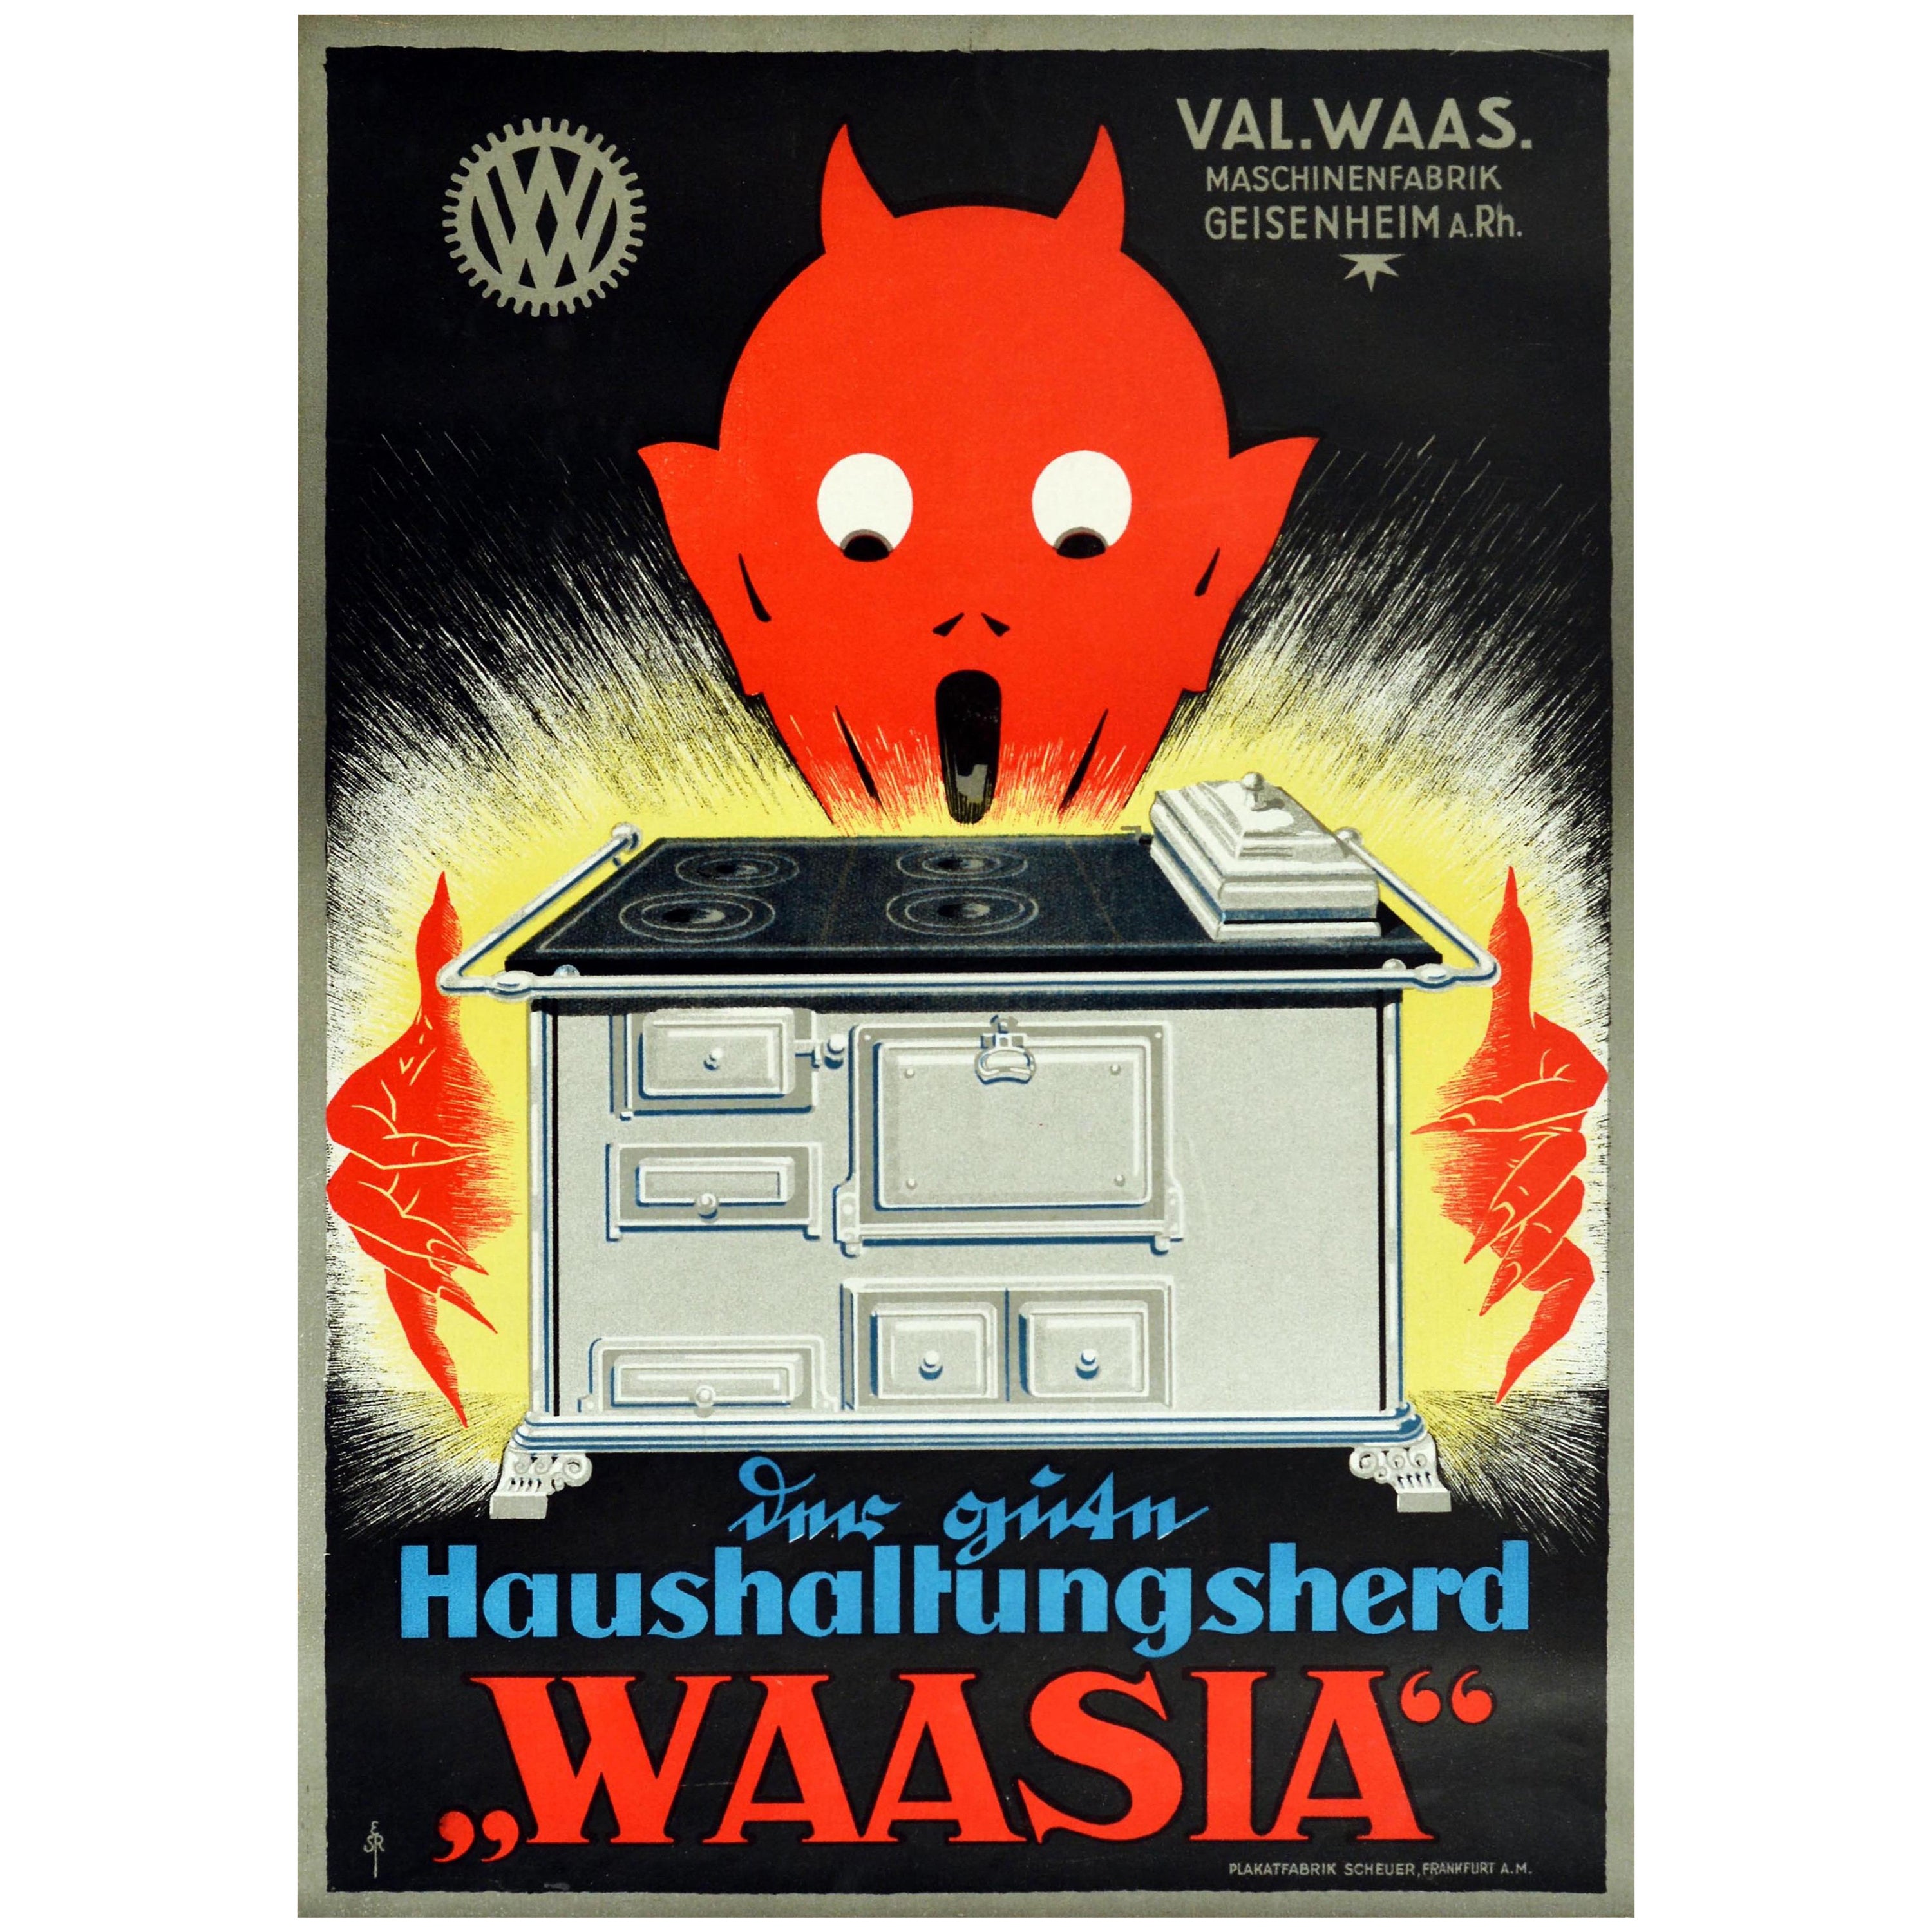 Original Vintage Poster For Waasia Household Stoves Kitchen Cooker Devil Design